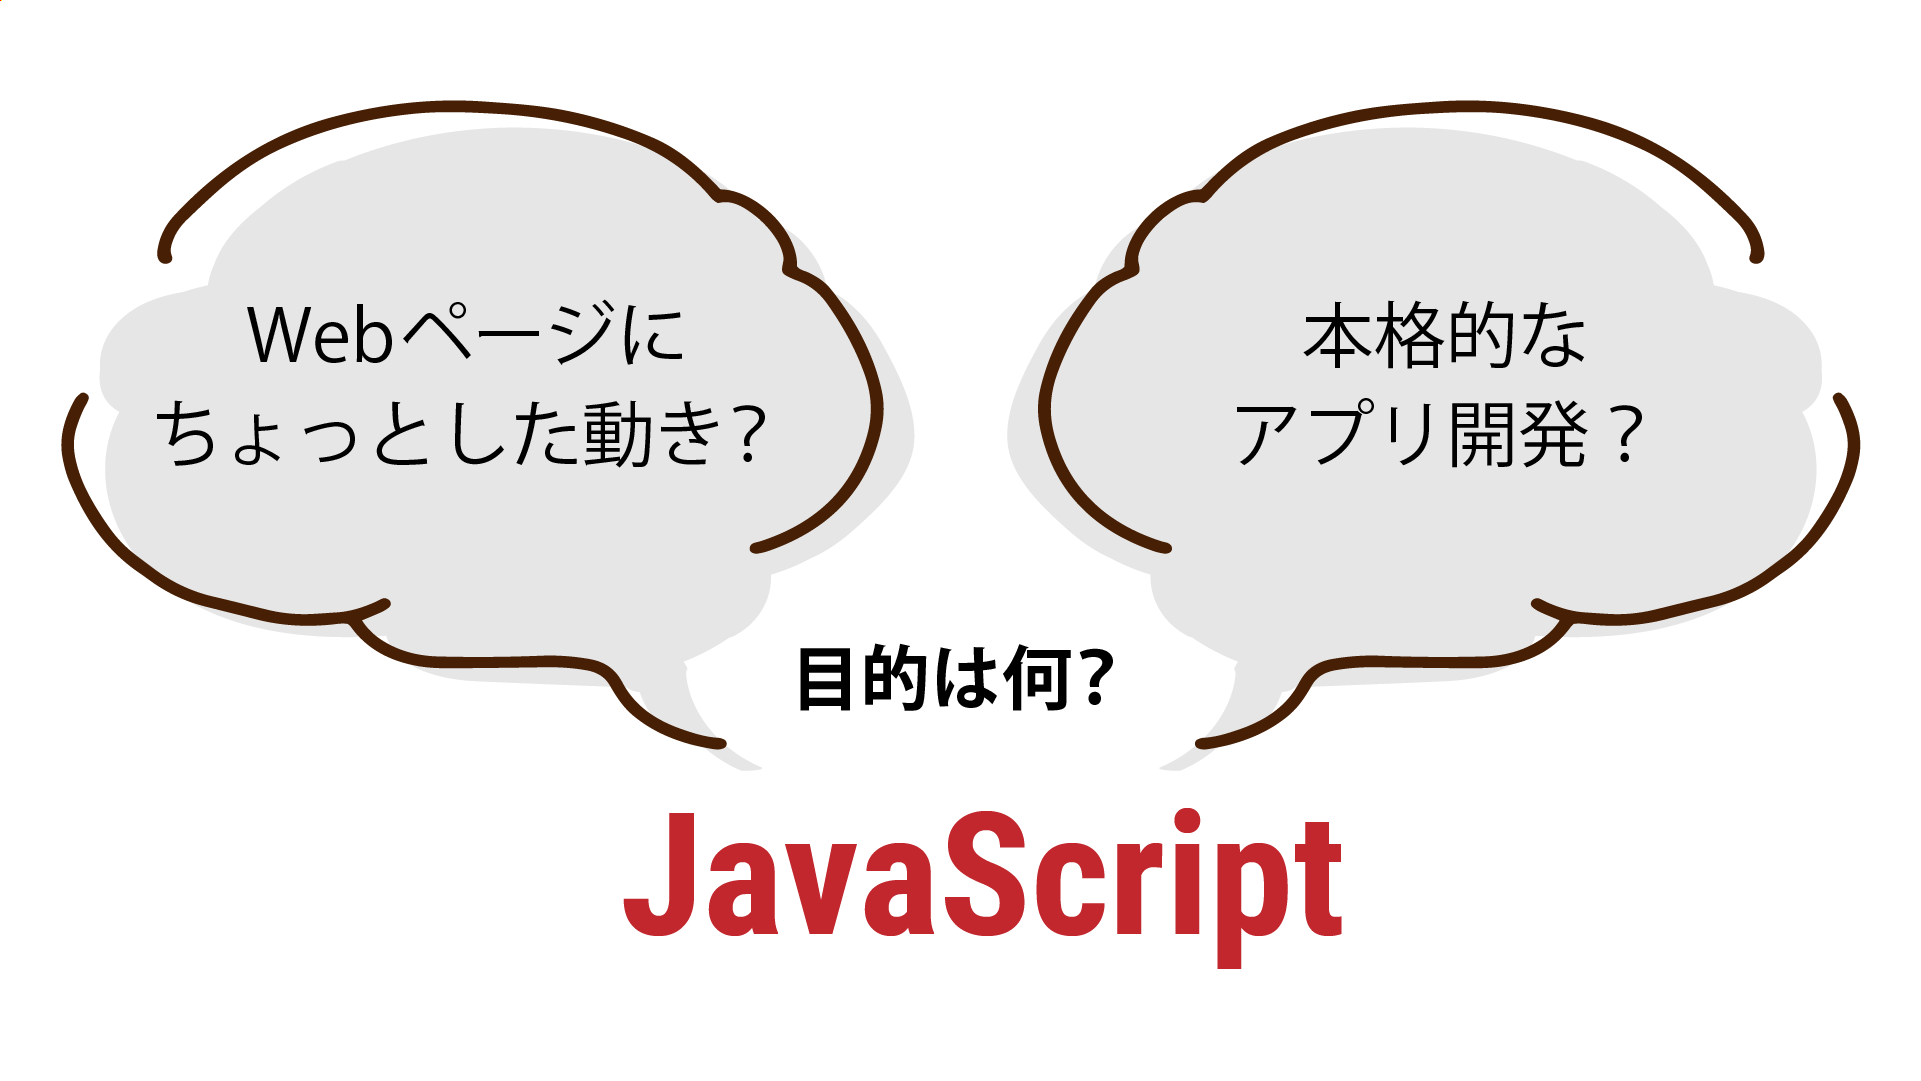 JavaScriptを学ぶ目的を明確にしよう！